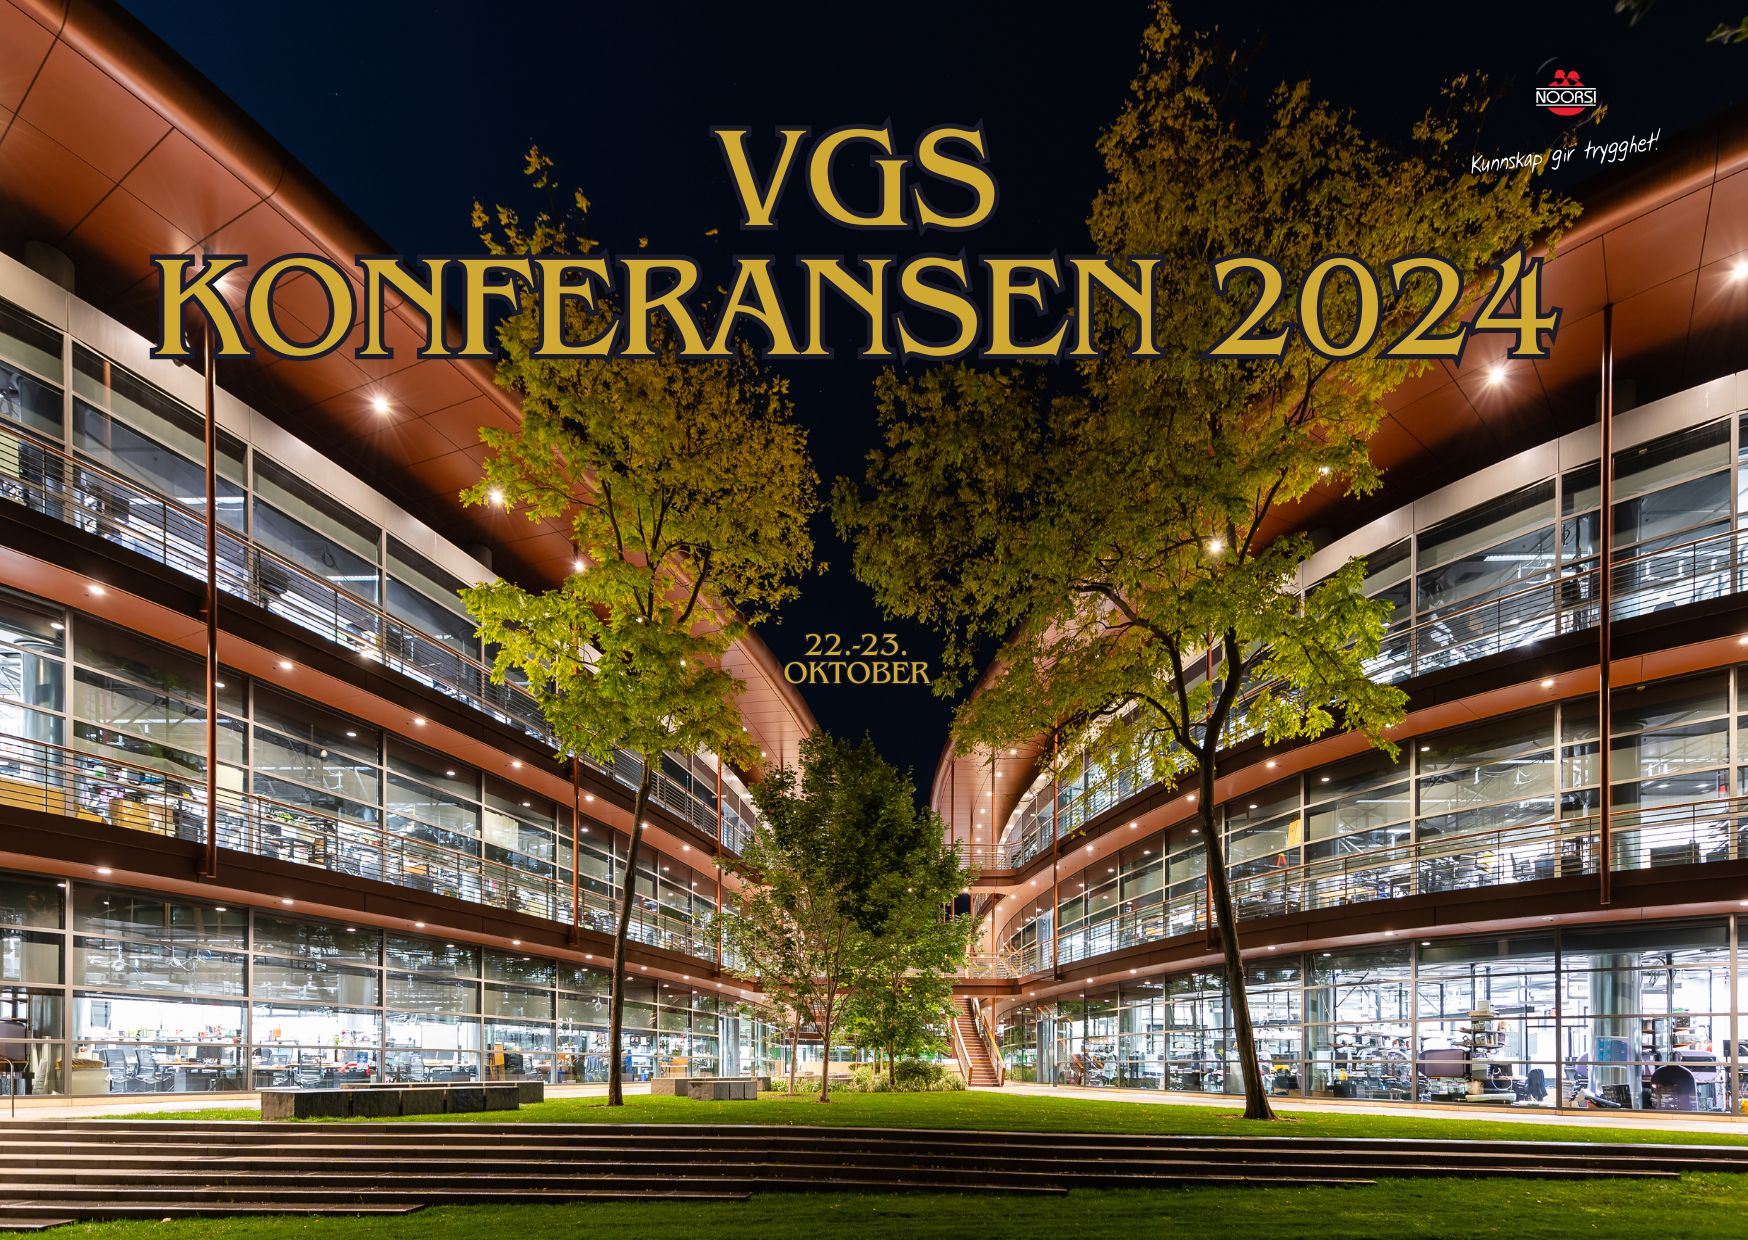 VGS konferansen 2024